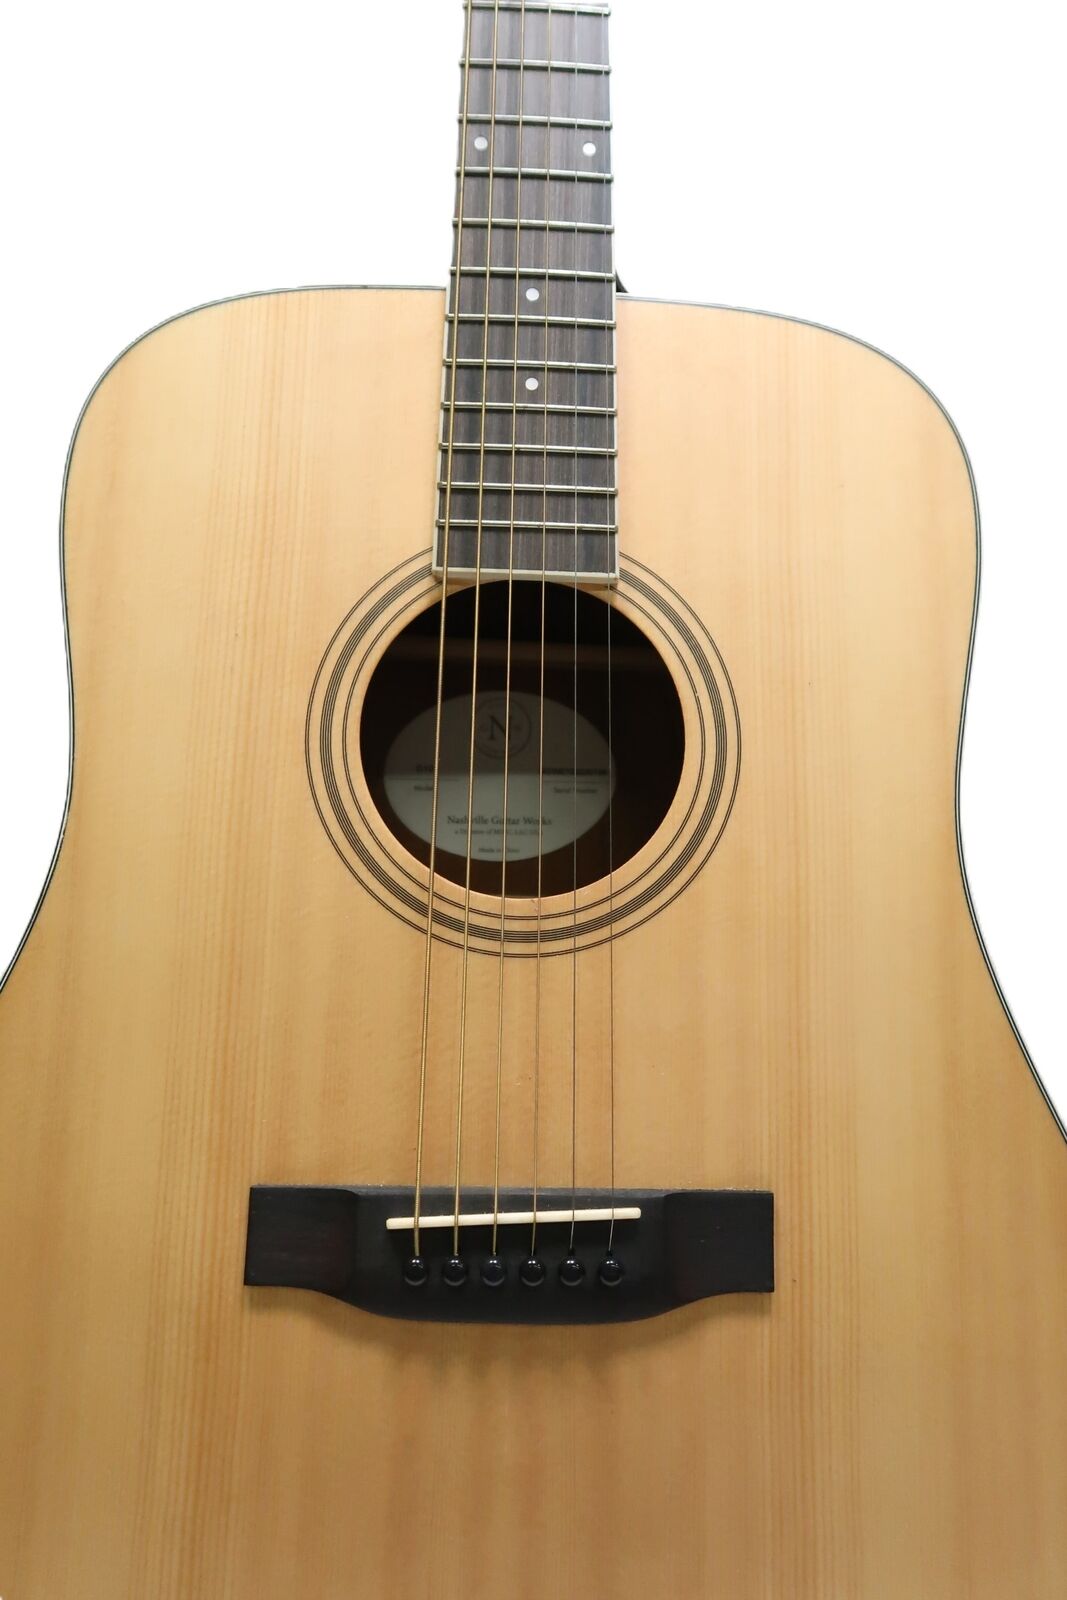 Nashville Guitar Works D10 Acoustic Guitar 9788 2